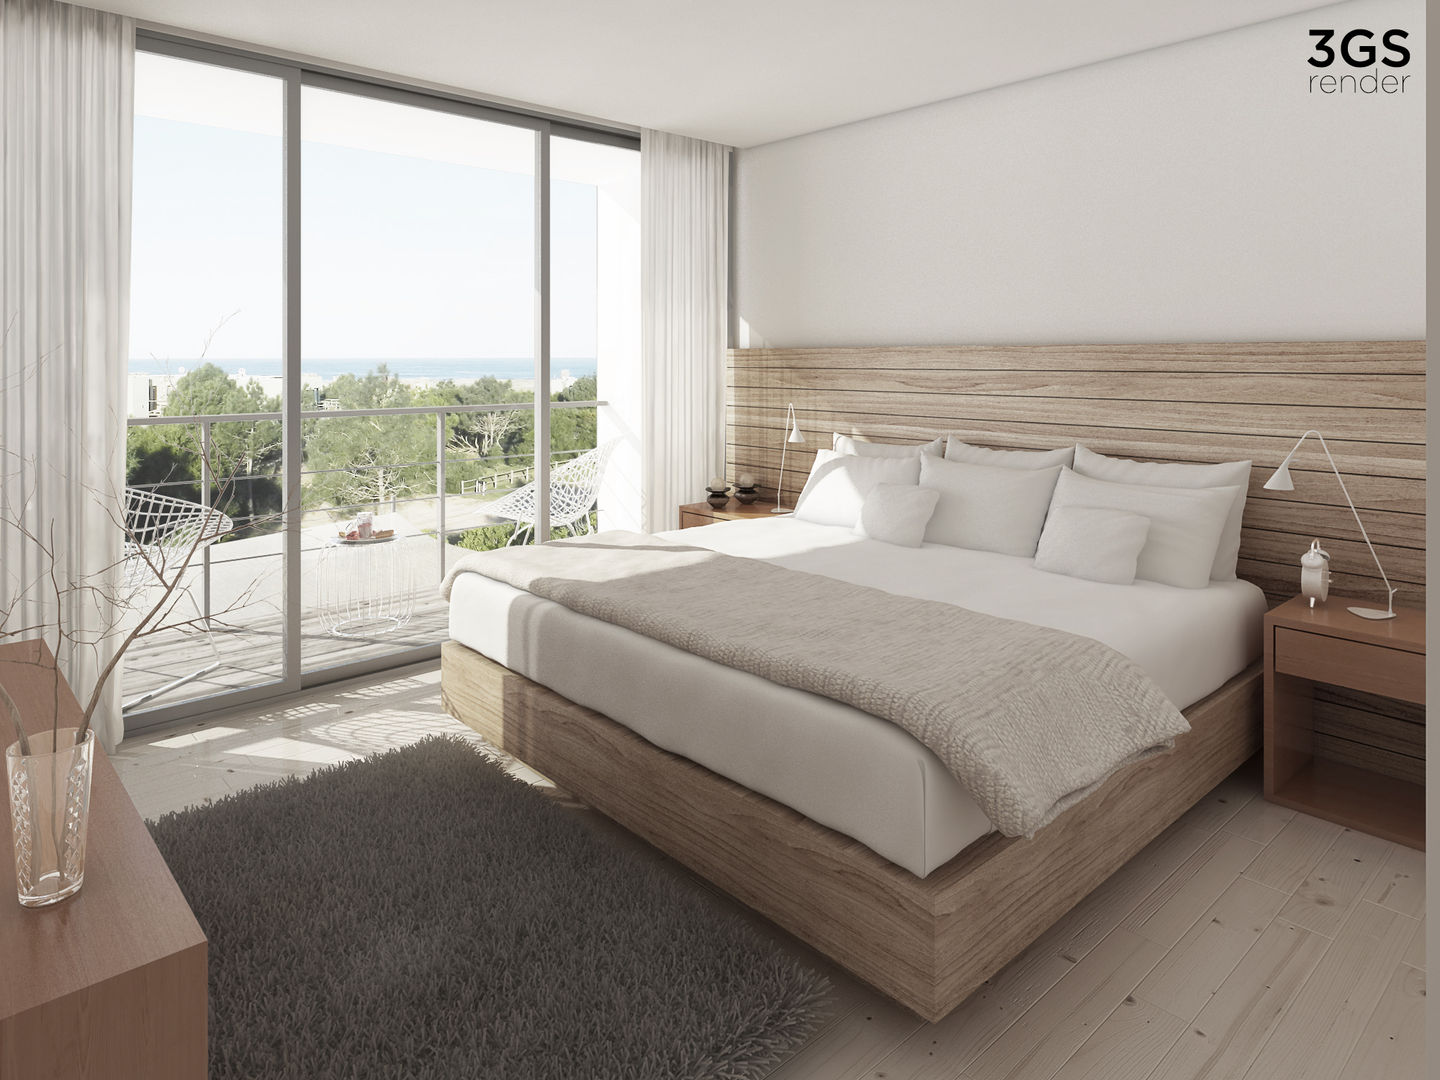 3GS Render, 3GS render 3GS render Modern style bedroom